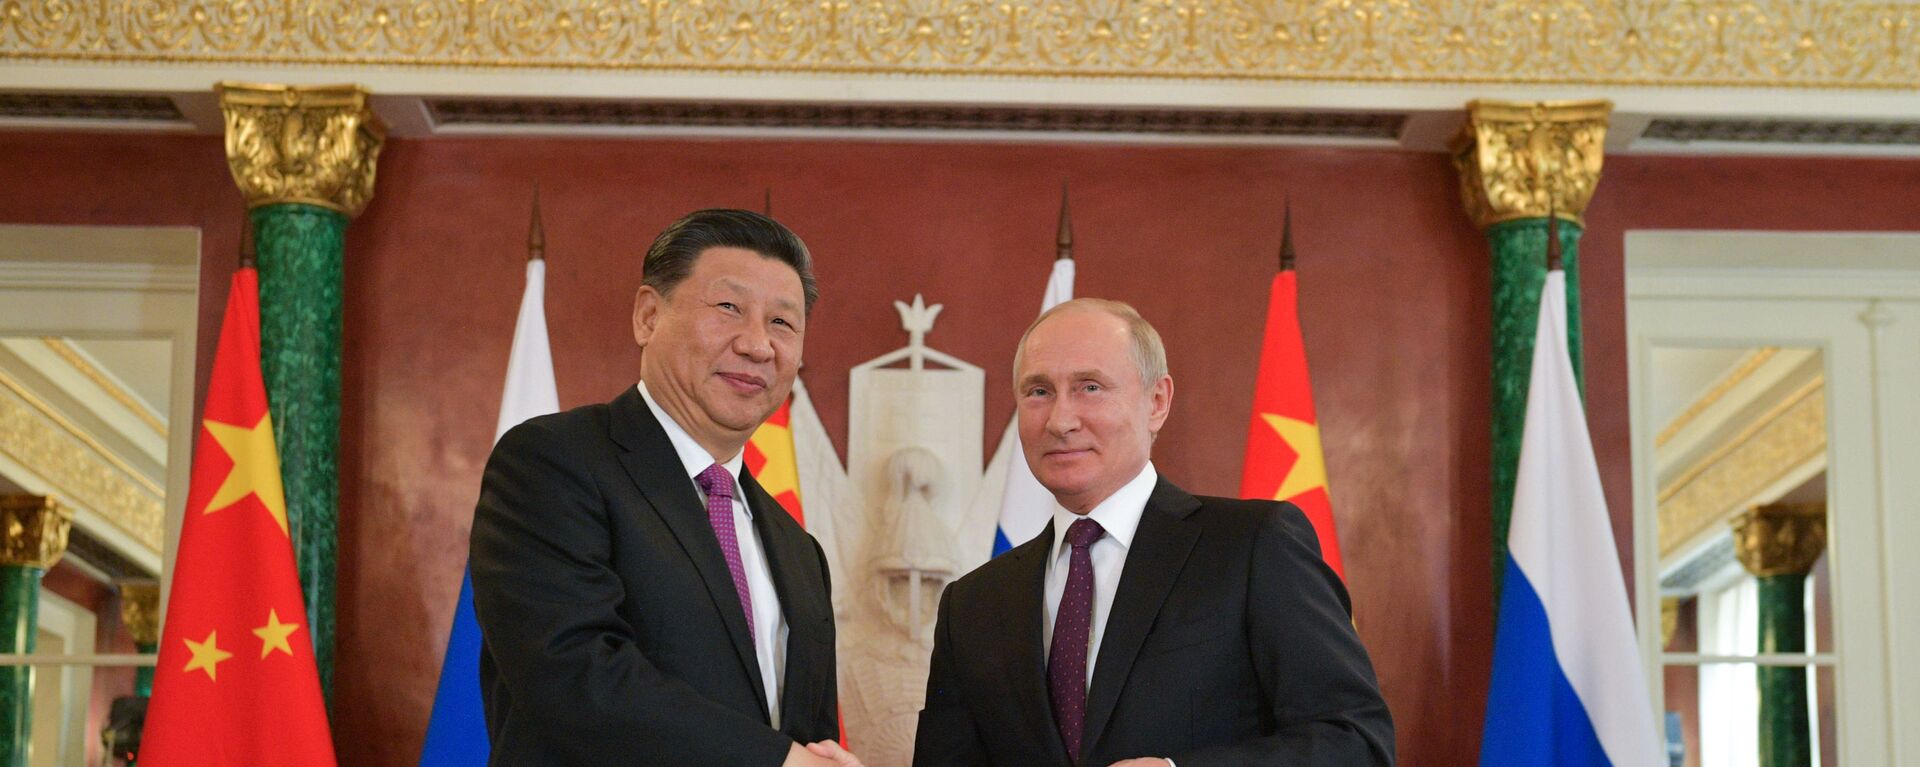 Президент России Владимир Путин и его китайский коллега Си Цзиньпин - Sputnik Таджикистан, 1920, 21.09.2020